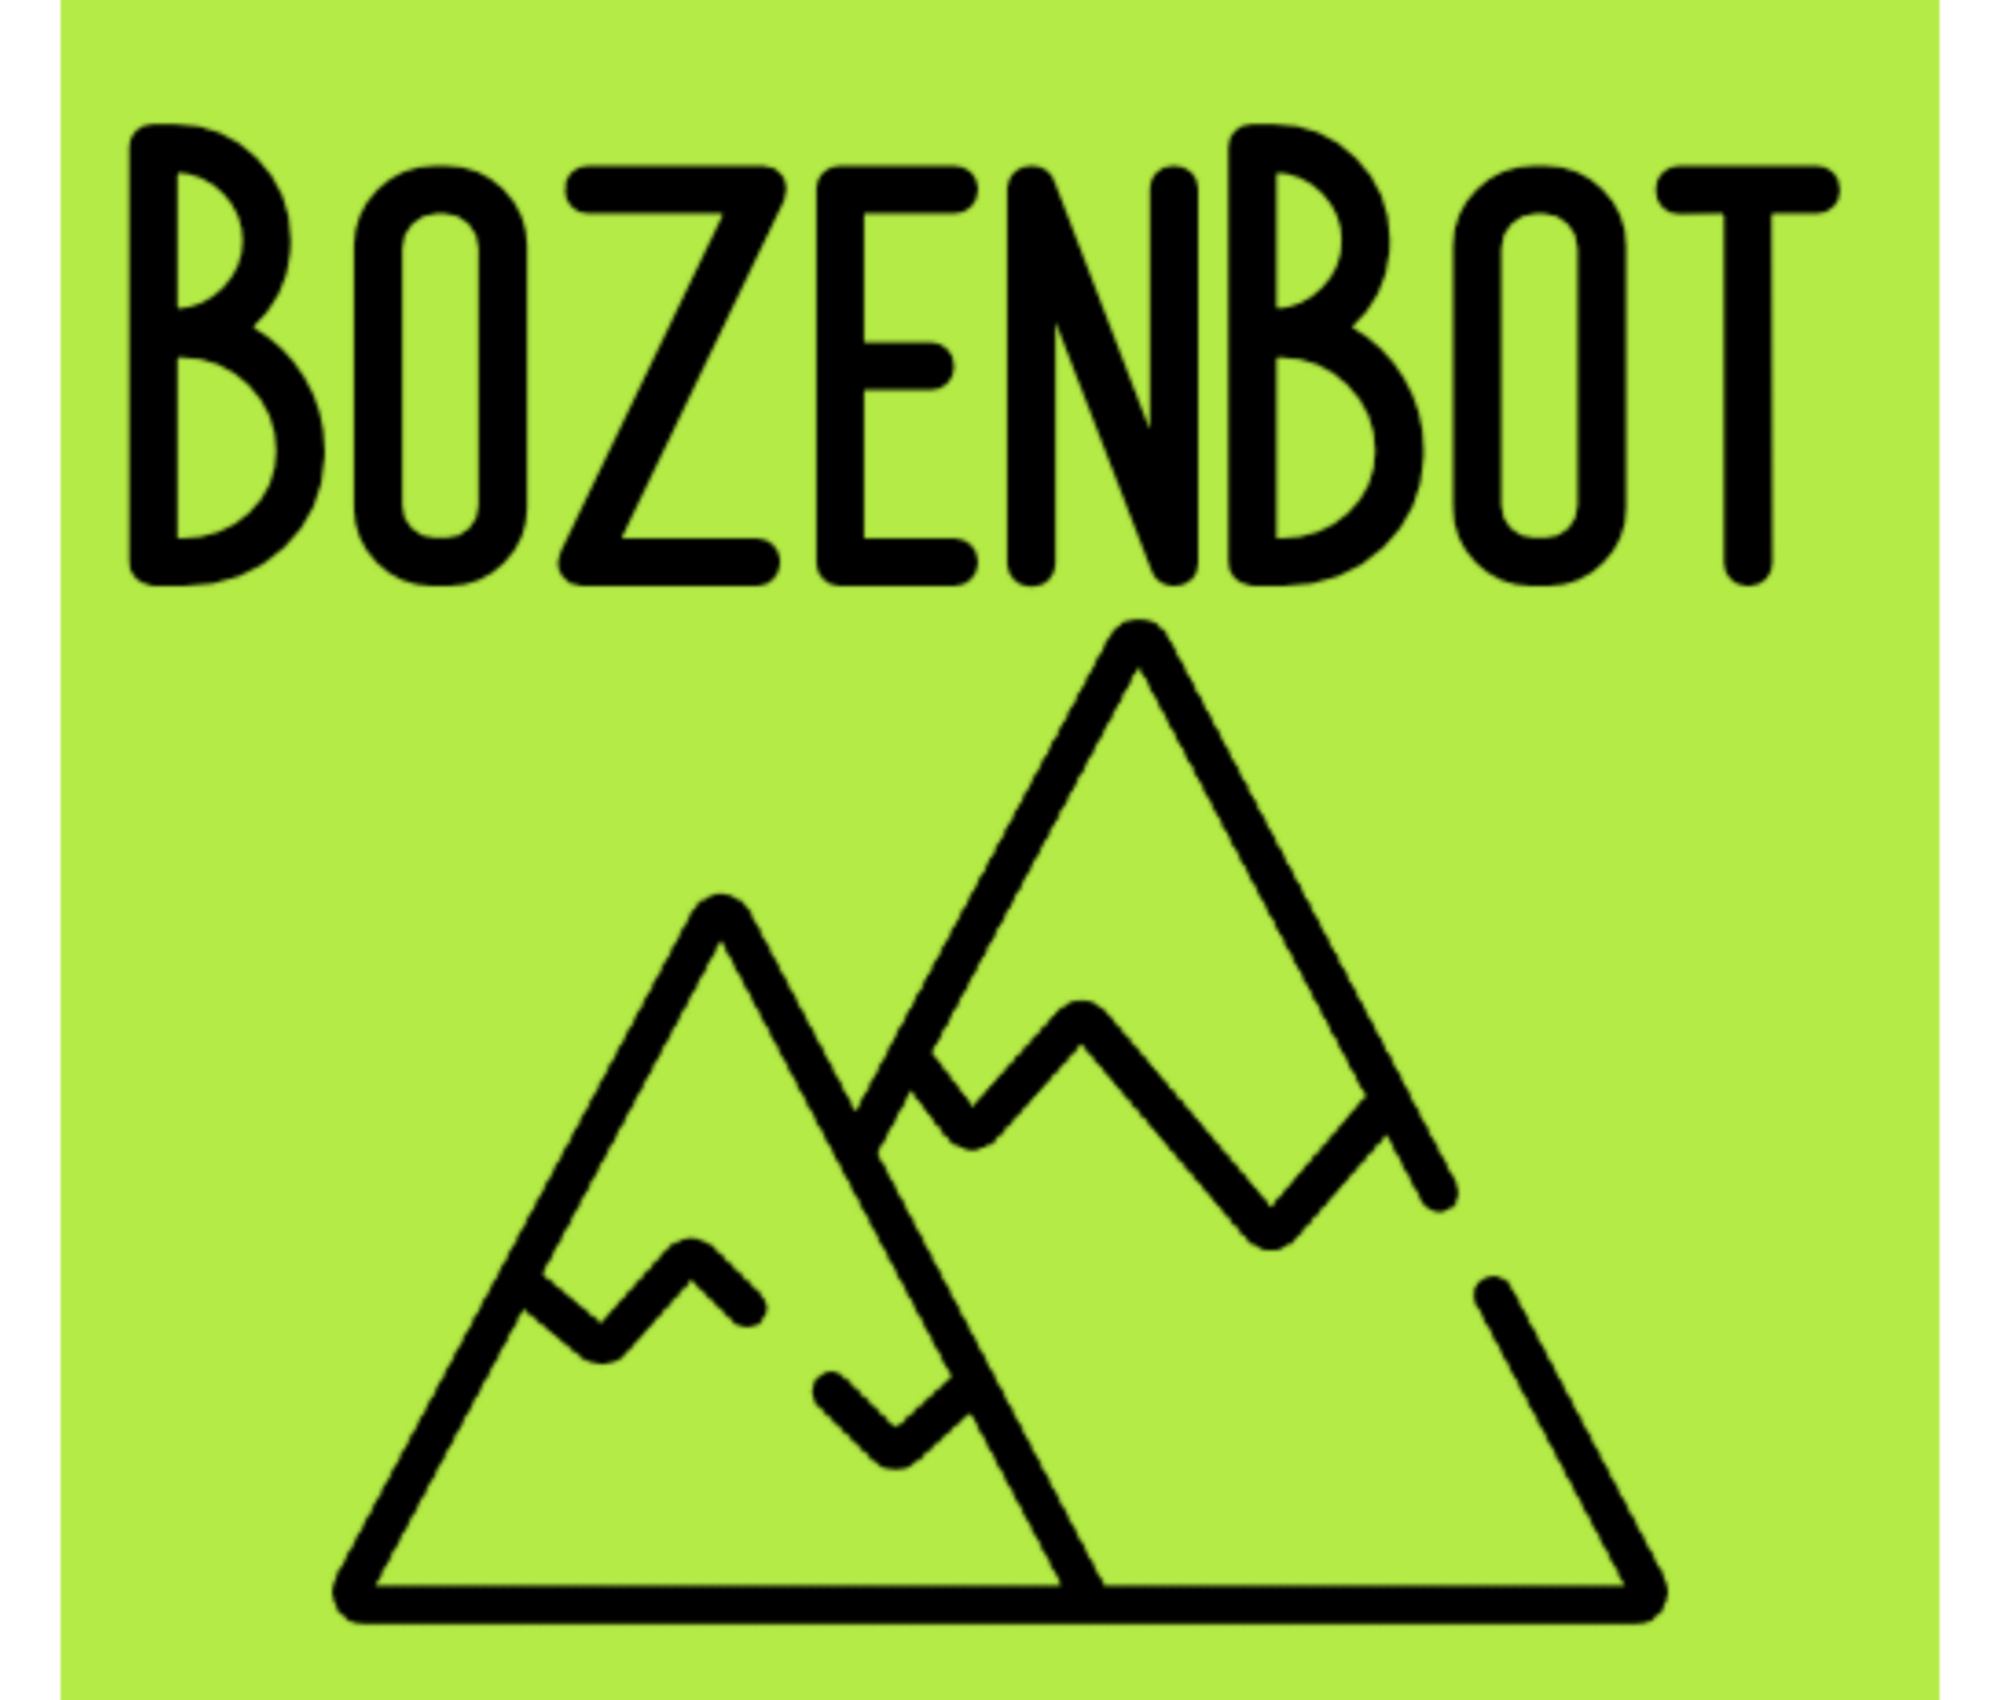 BozenBot